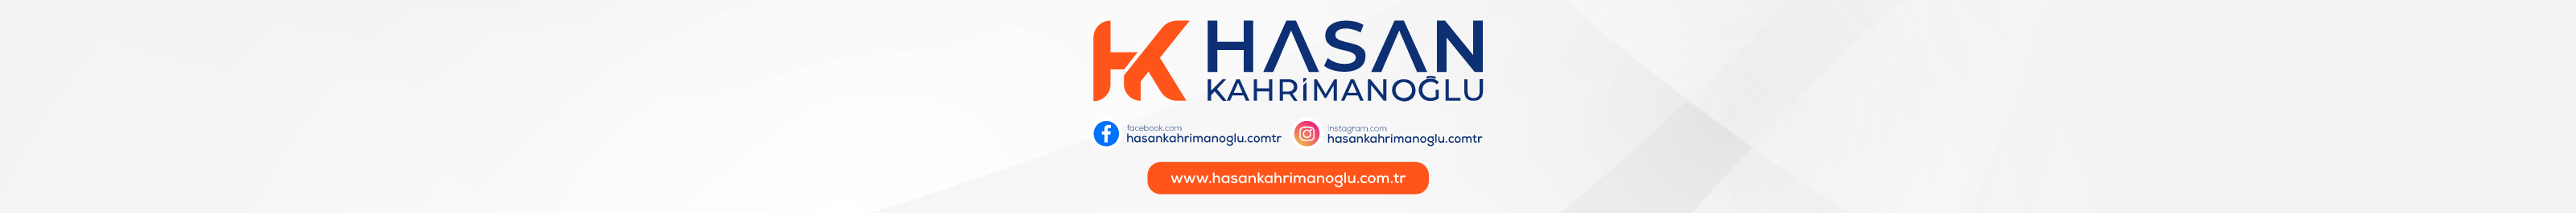 Hasan KAHRİMANOĞLU's profile banner